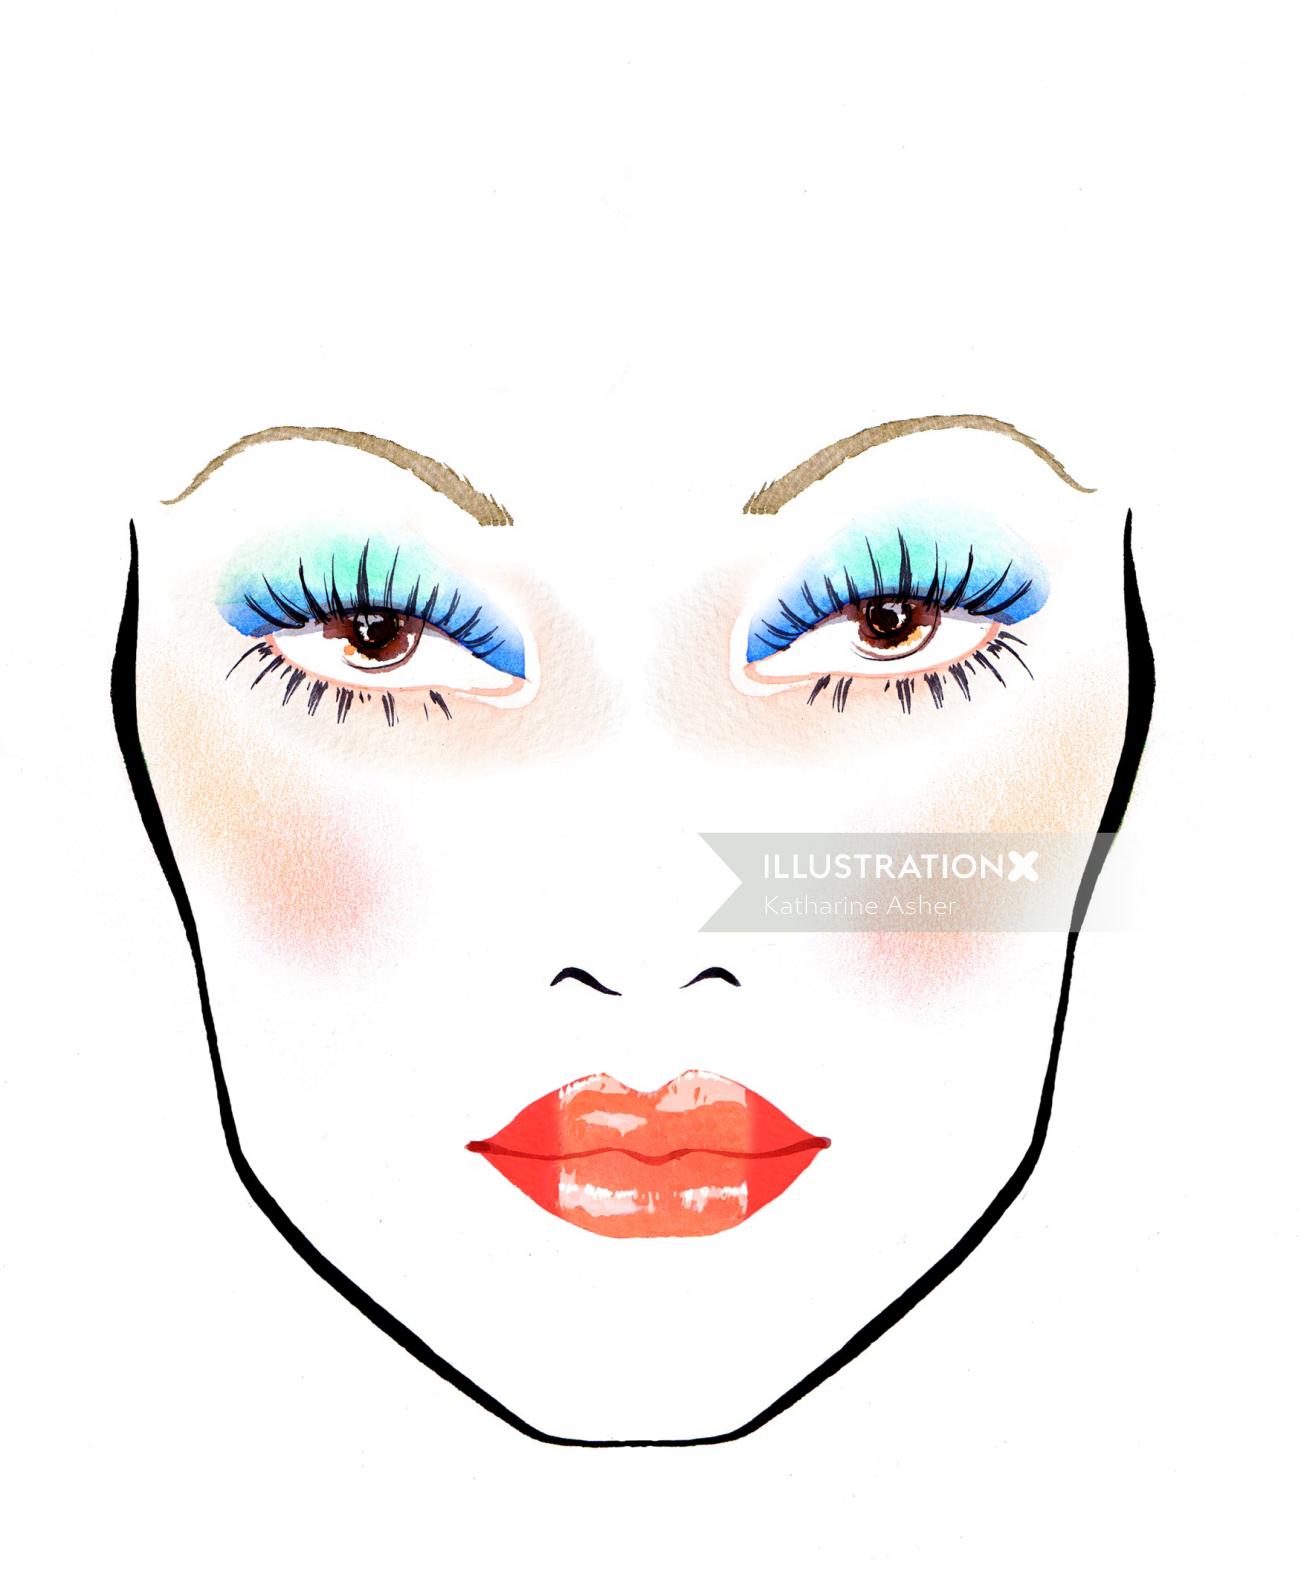 Illustration des yeux bleus et des lèvres rouges par Katharine Asher